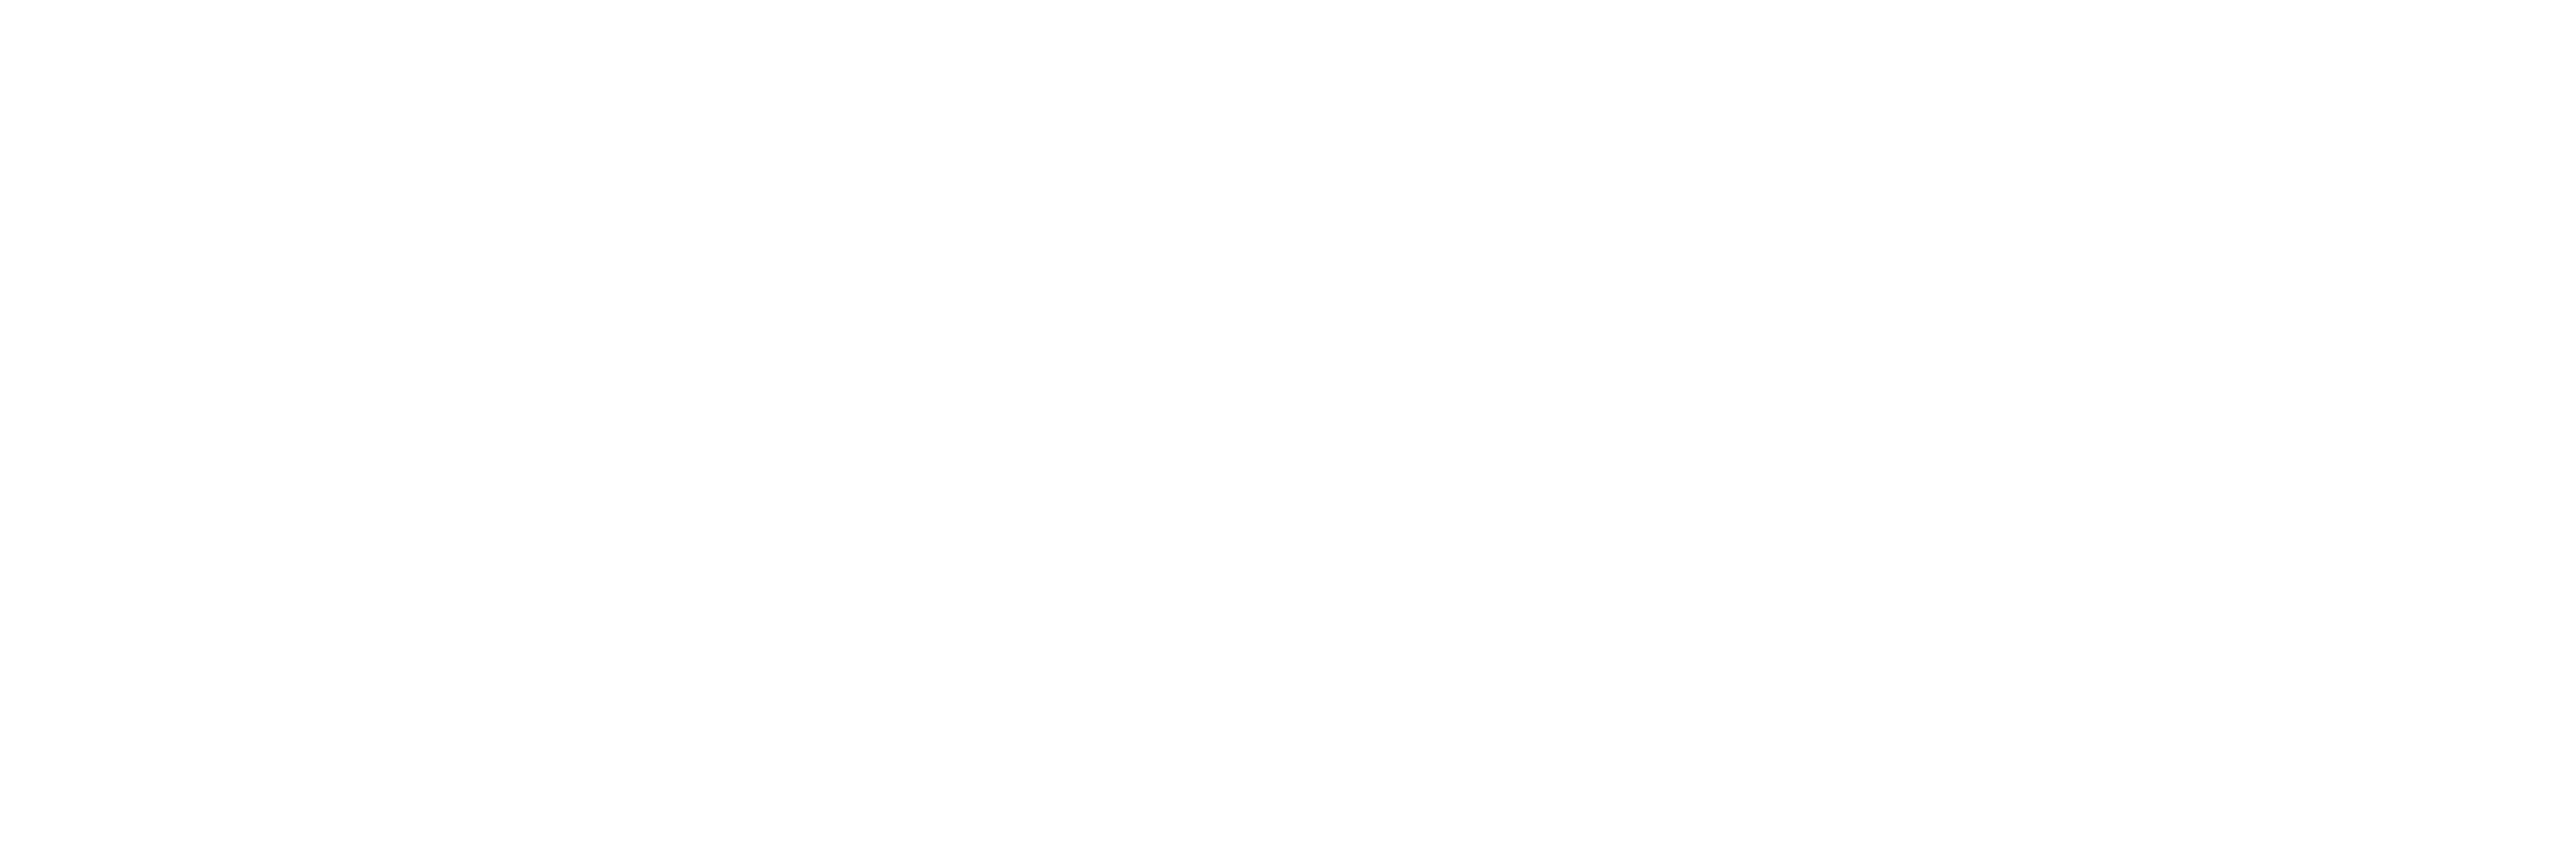 Furry Friends Forever: Elmo Gets a Puppy logo